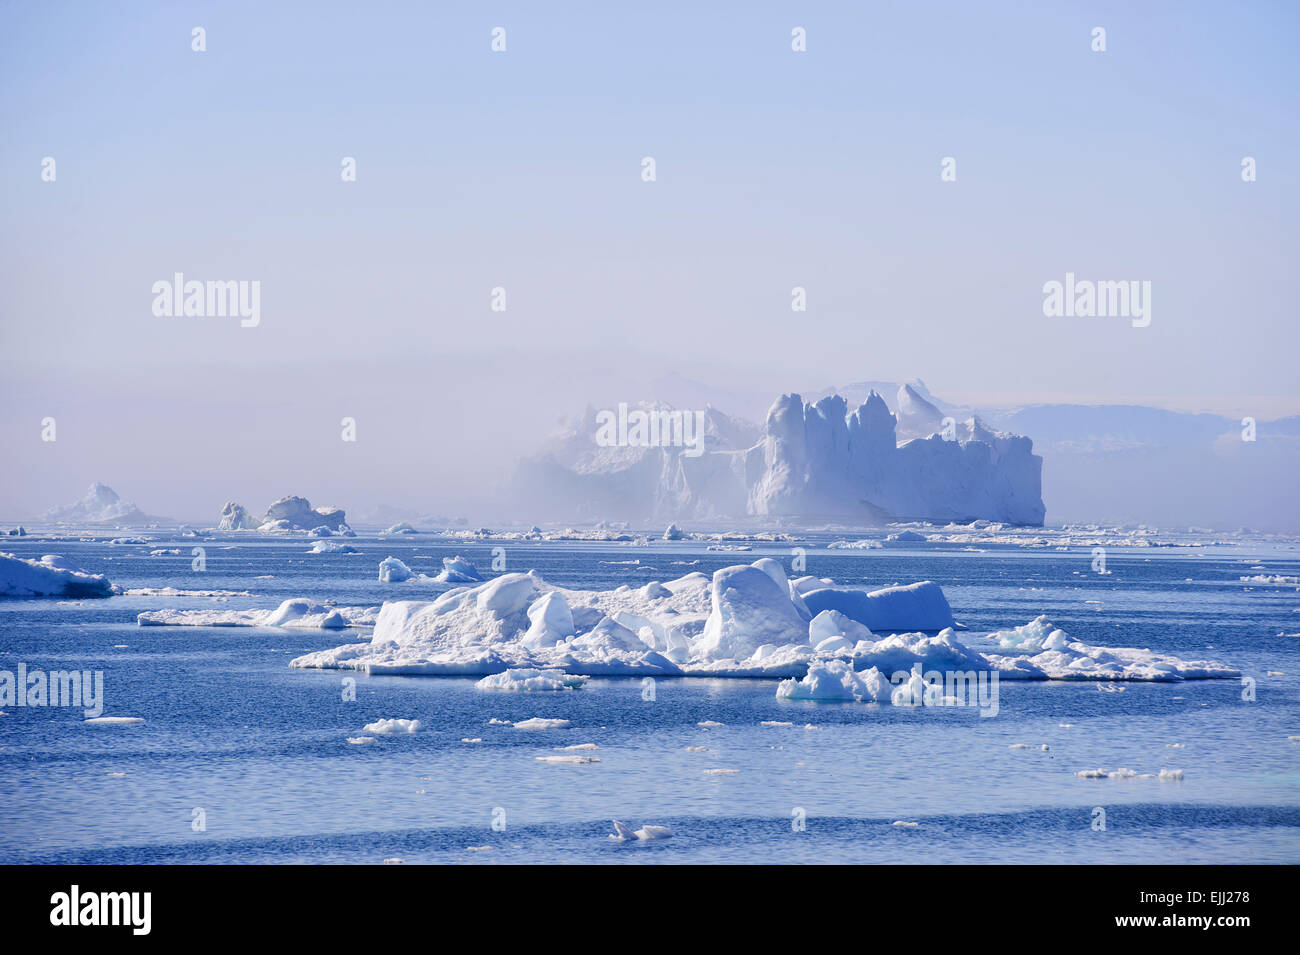 Un enorme castello come iceberg galleggia nella baia di Disko. Questi iceberg sono partorito dal ghiacciaio Jakobshavn. Foto Stock